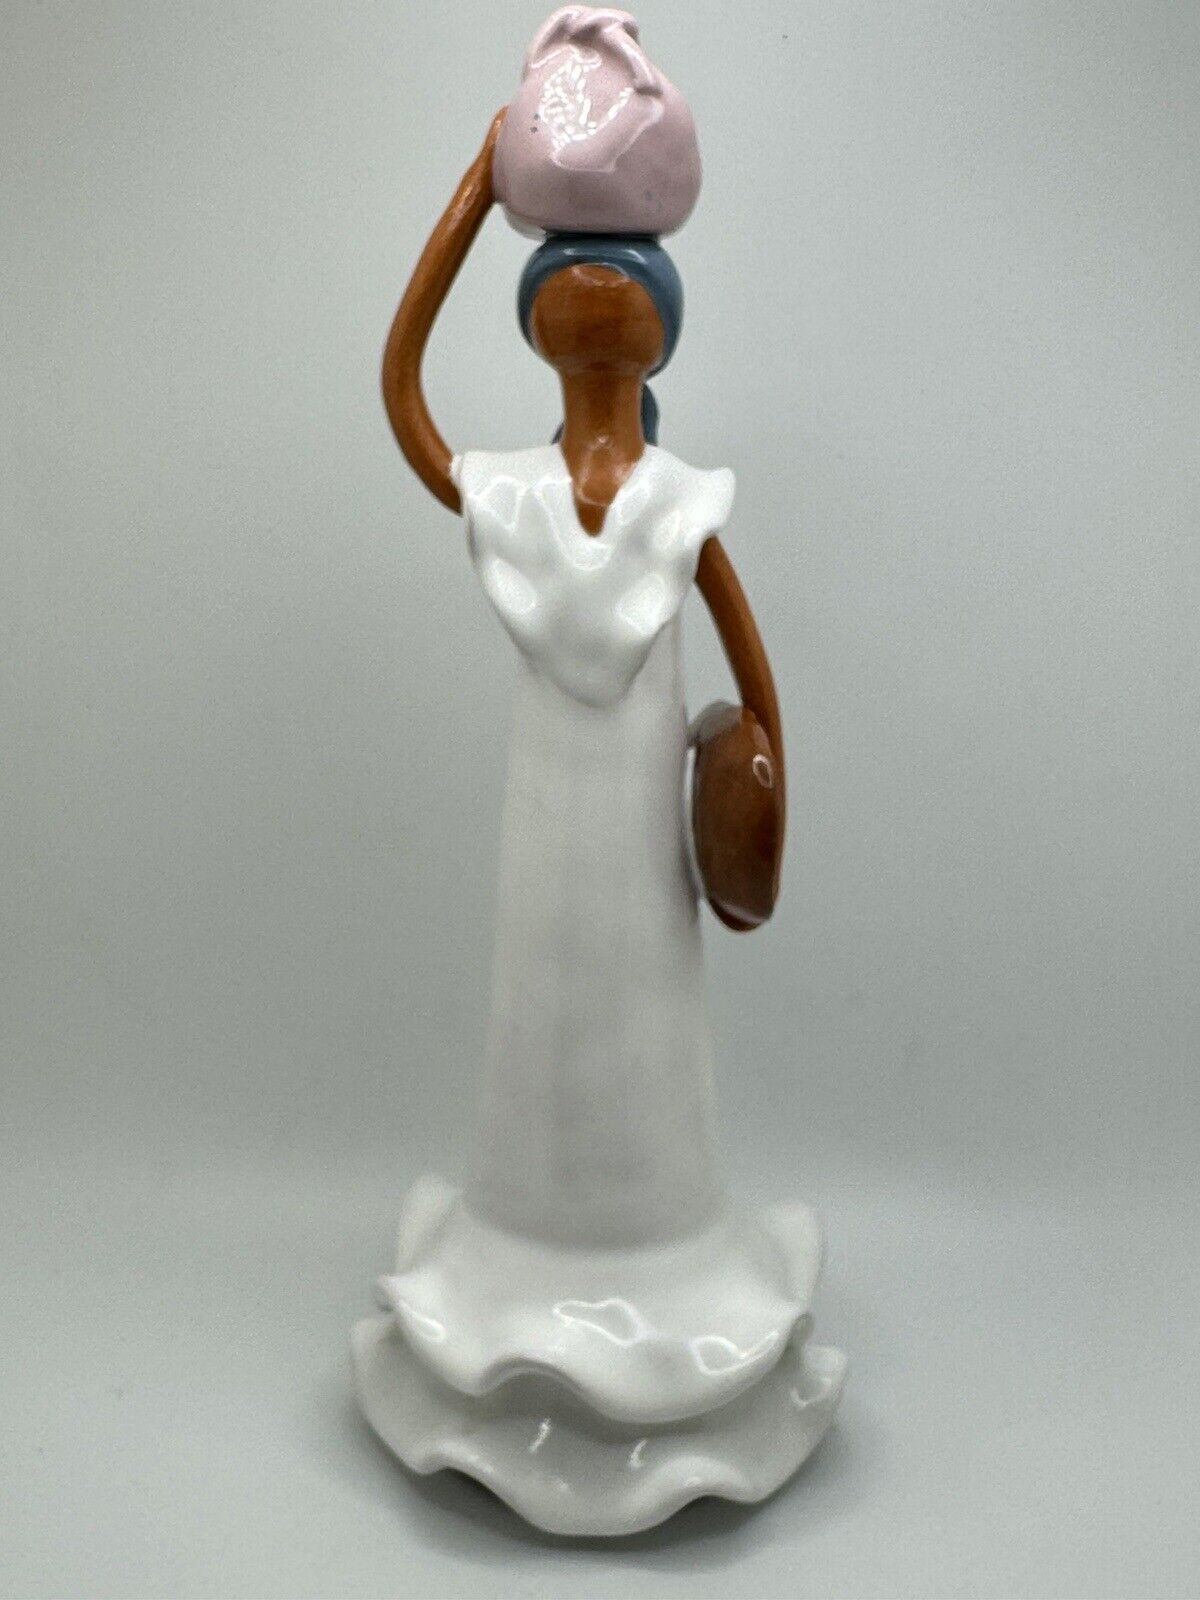 Artesania Lime Faceless Girls Ceramic Liliana Mera Lime Collection 9.75” figure